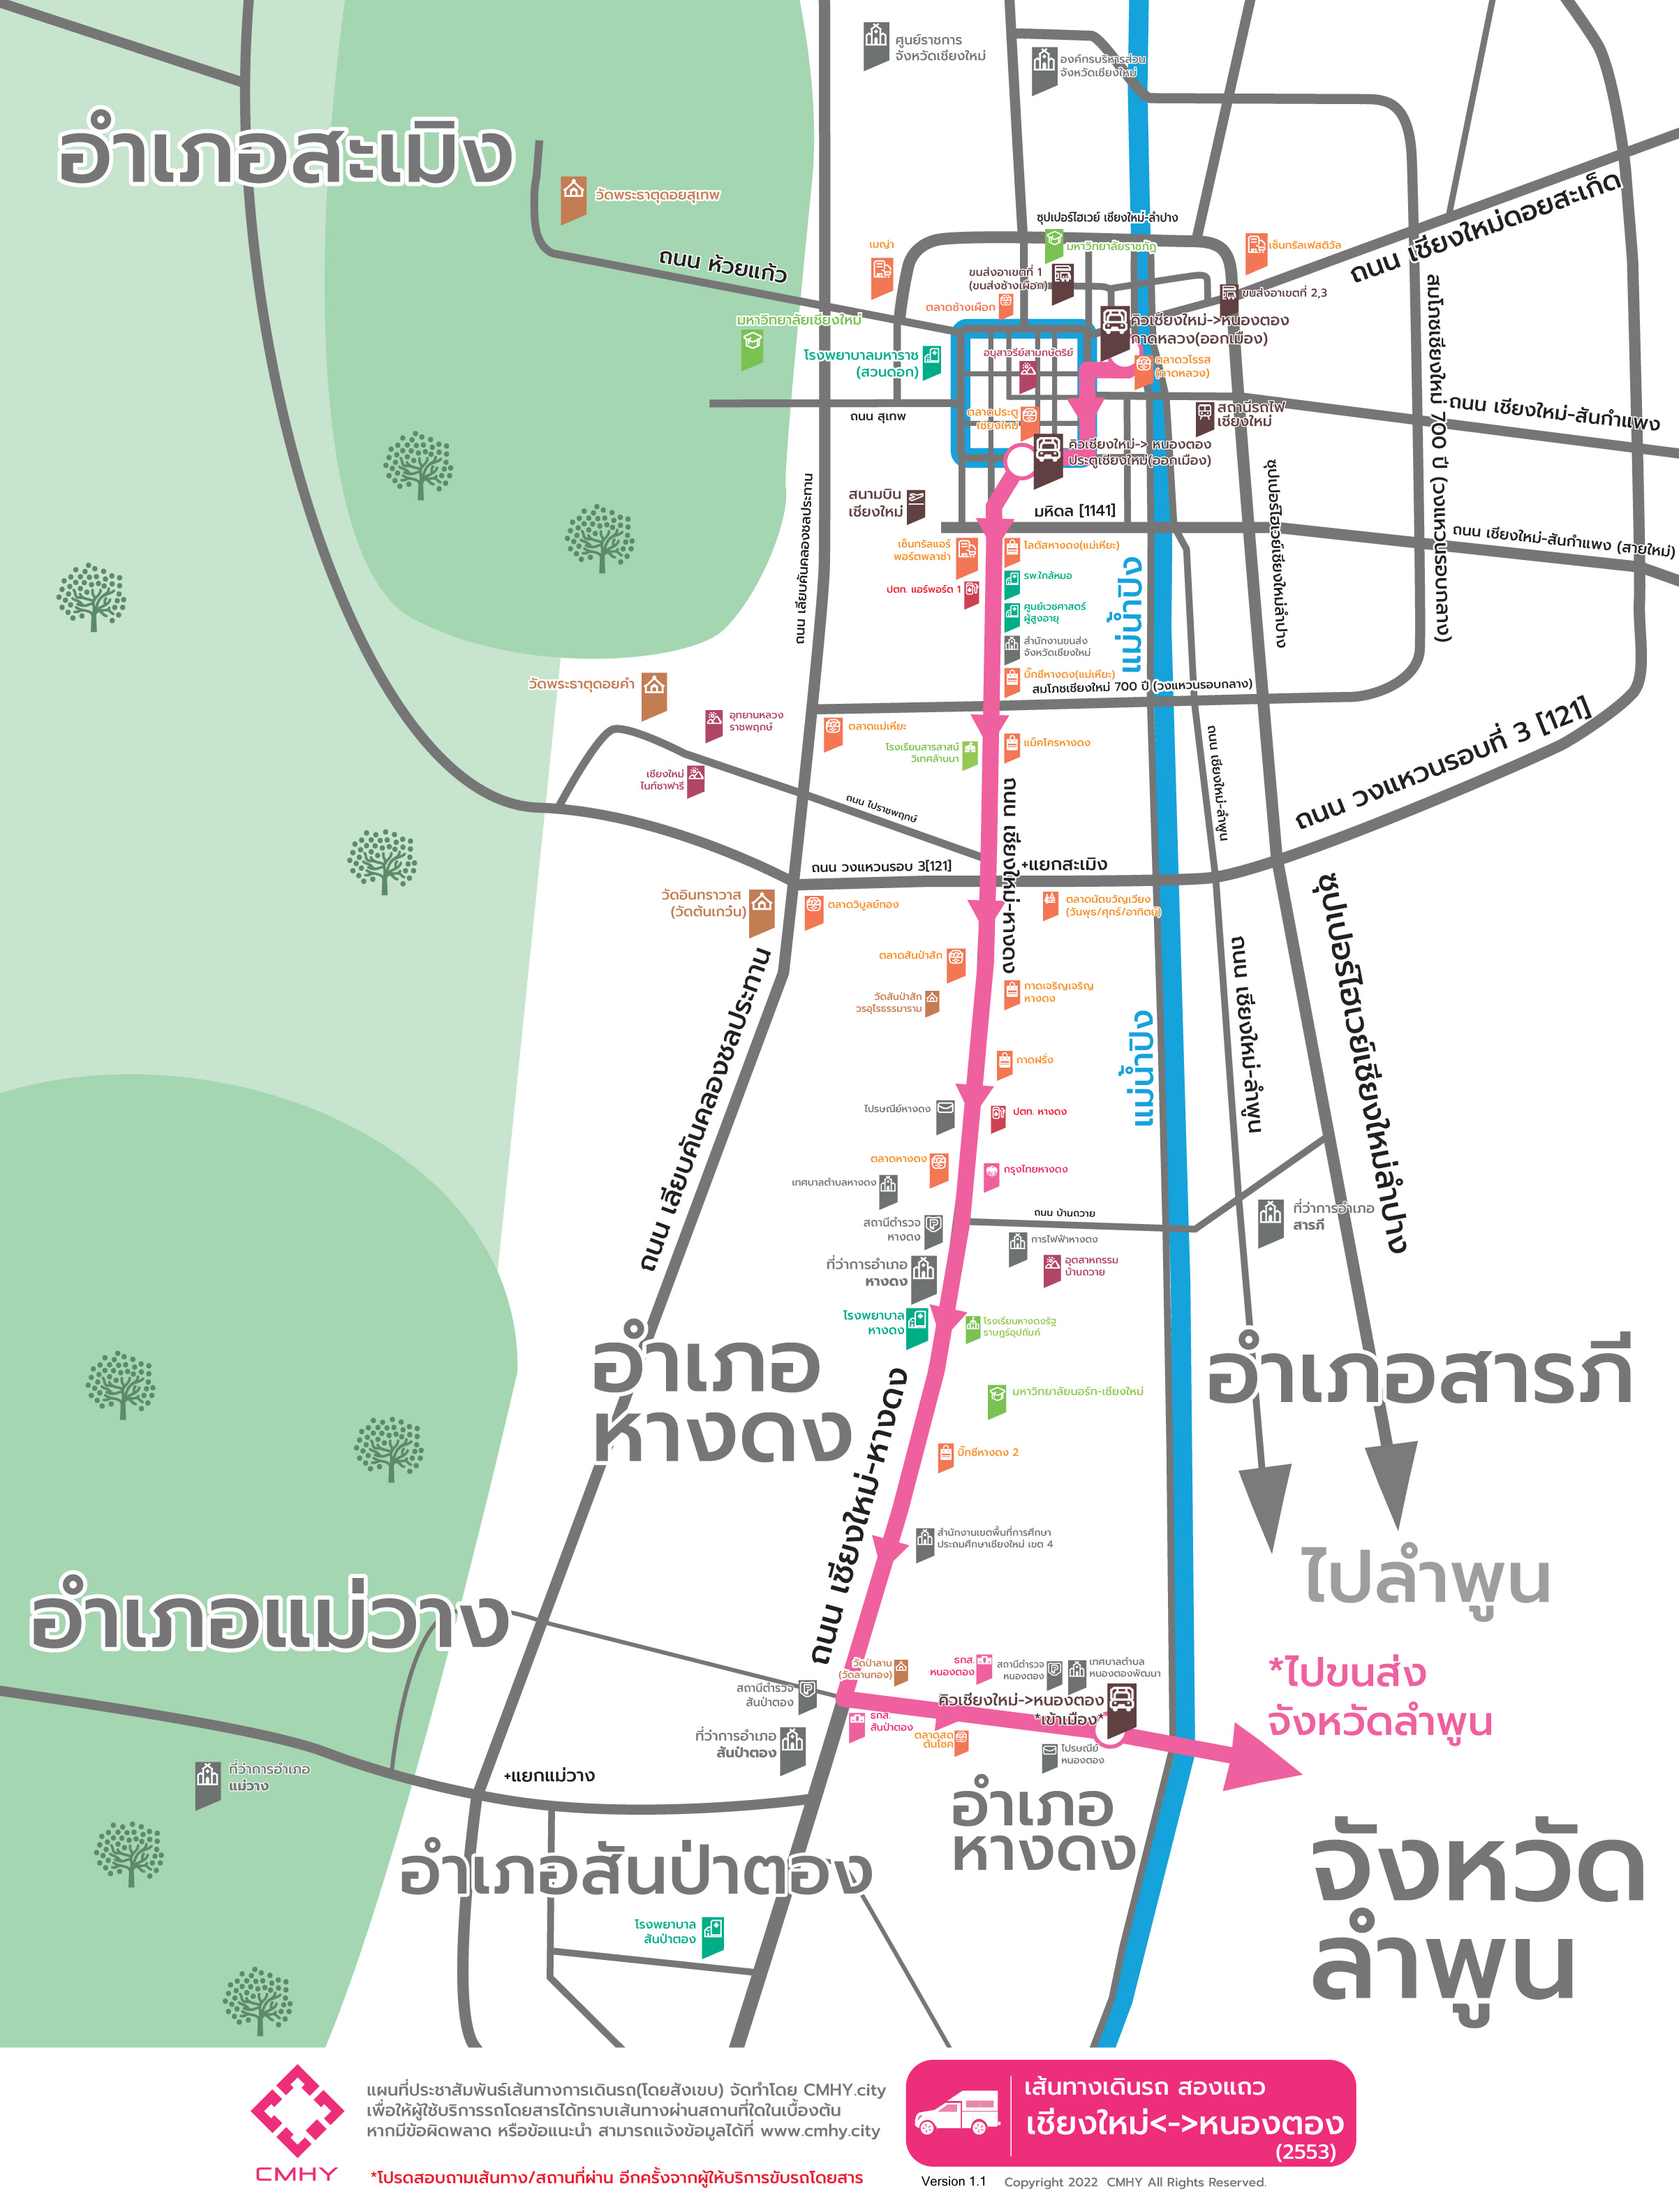 Minibus Chiangmai-Nongtong  [@Waroroj]